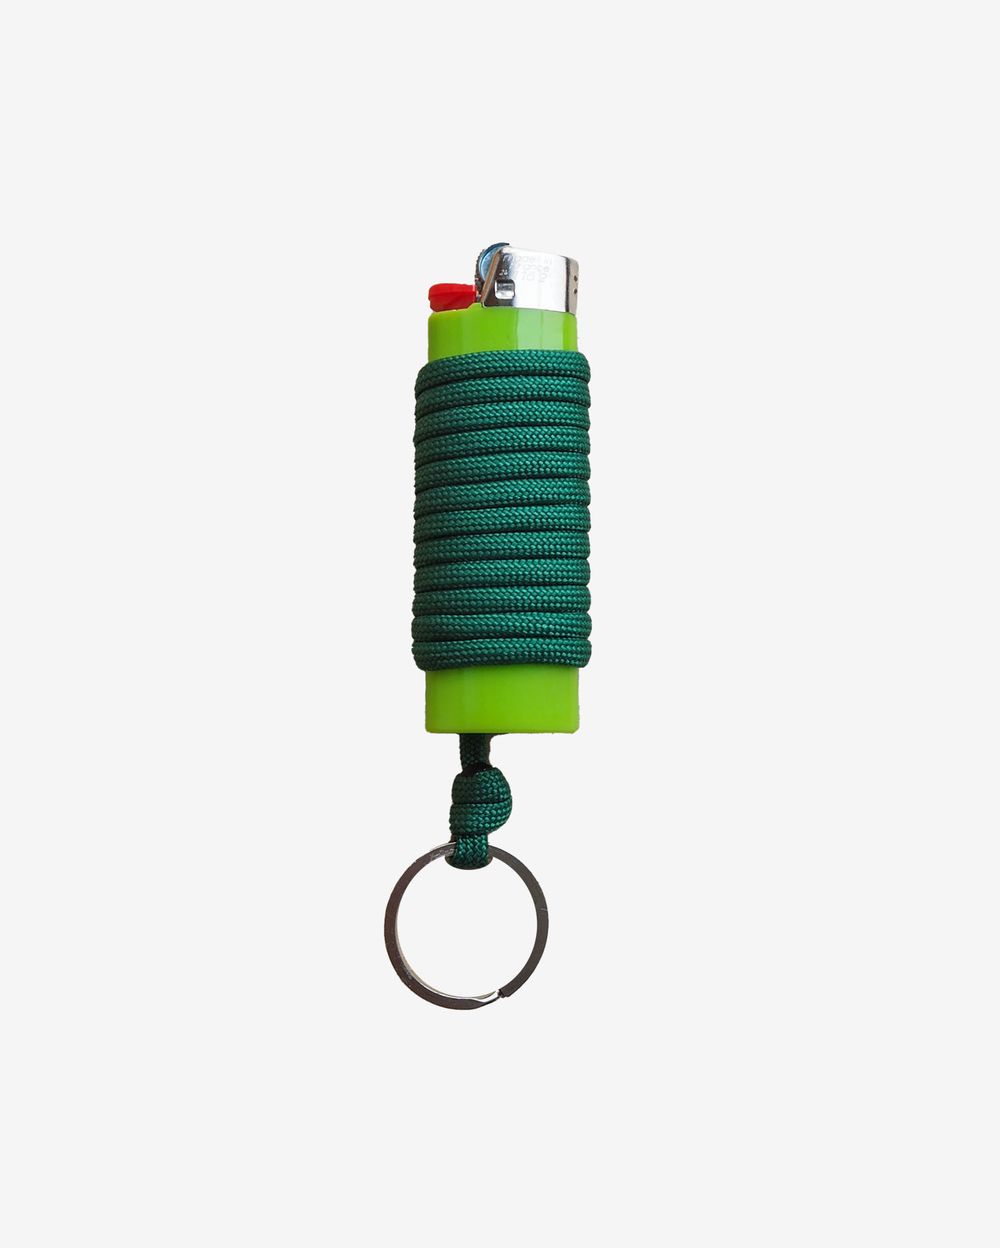 Зажигалка Ack Items зелёная (зелёный шнурок)